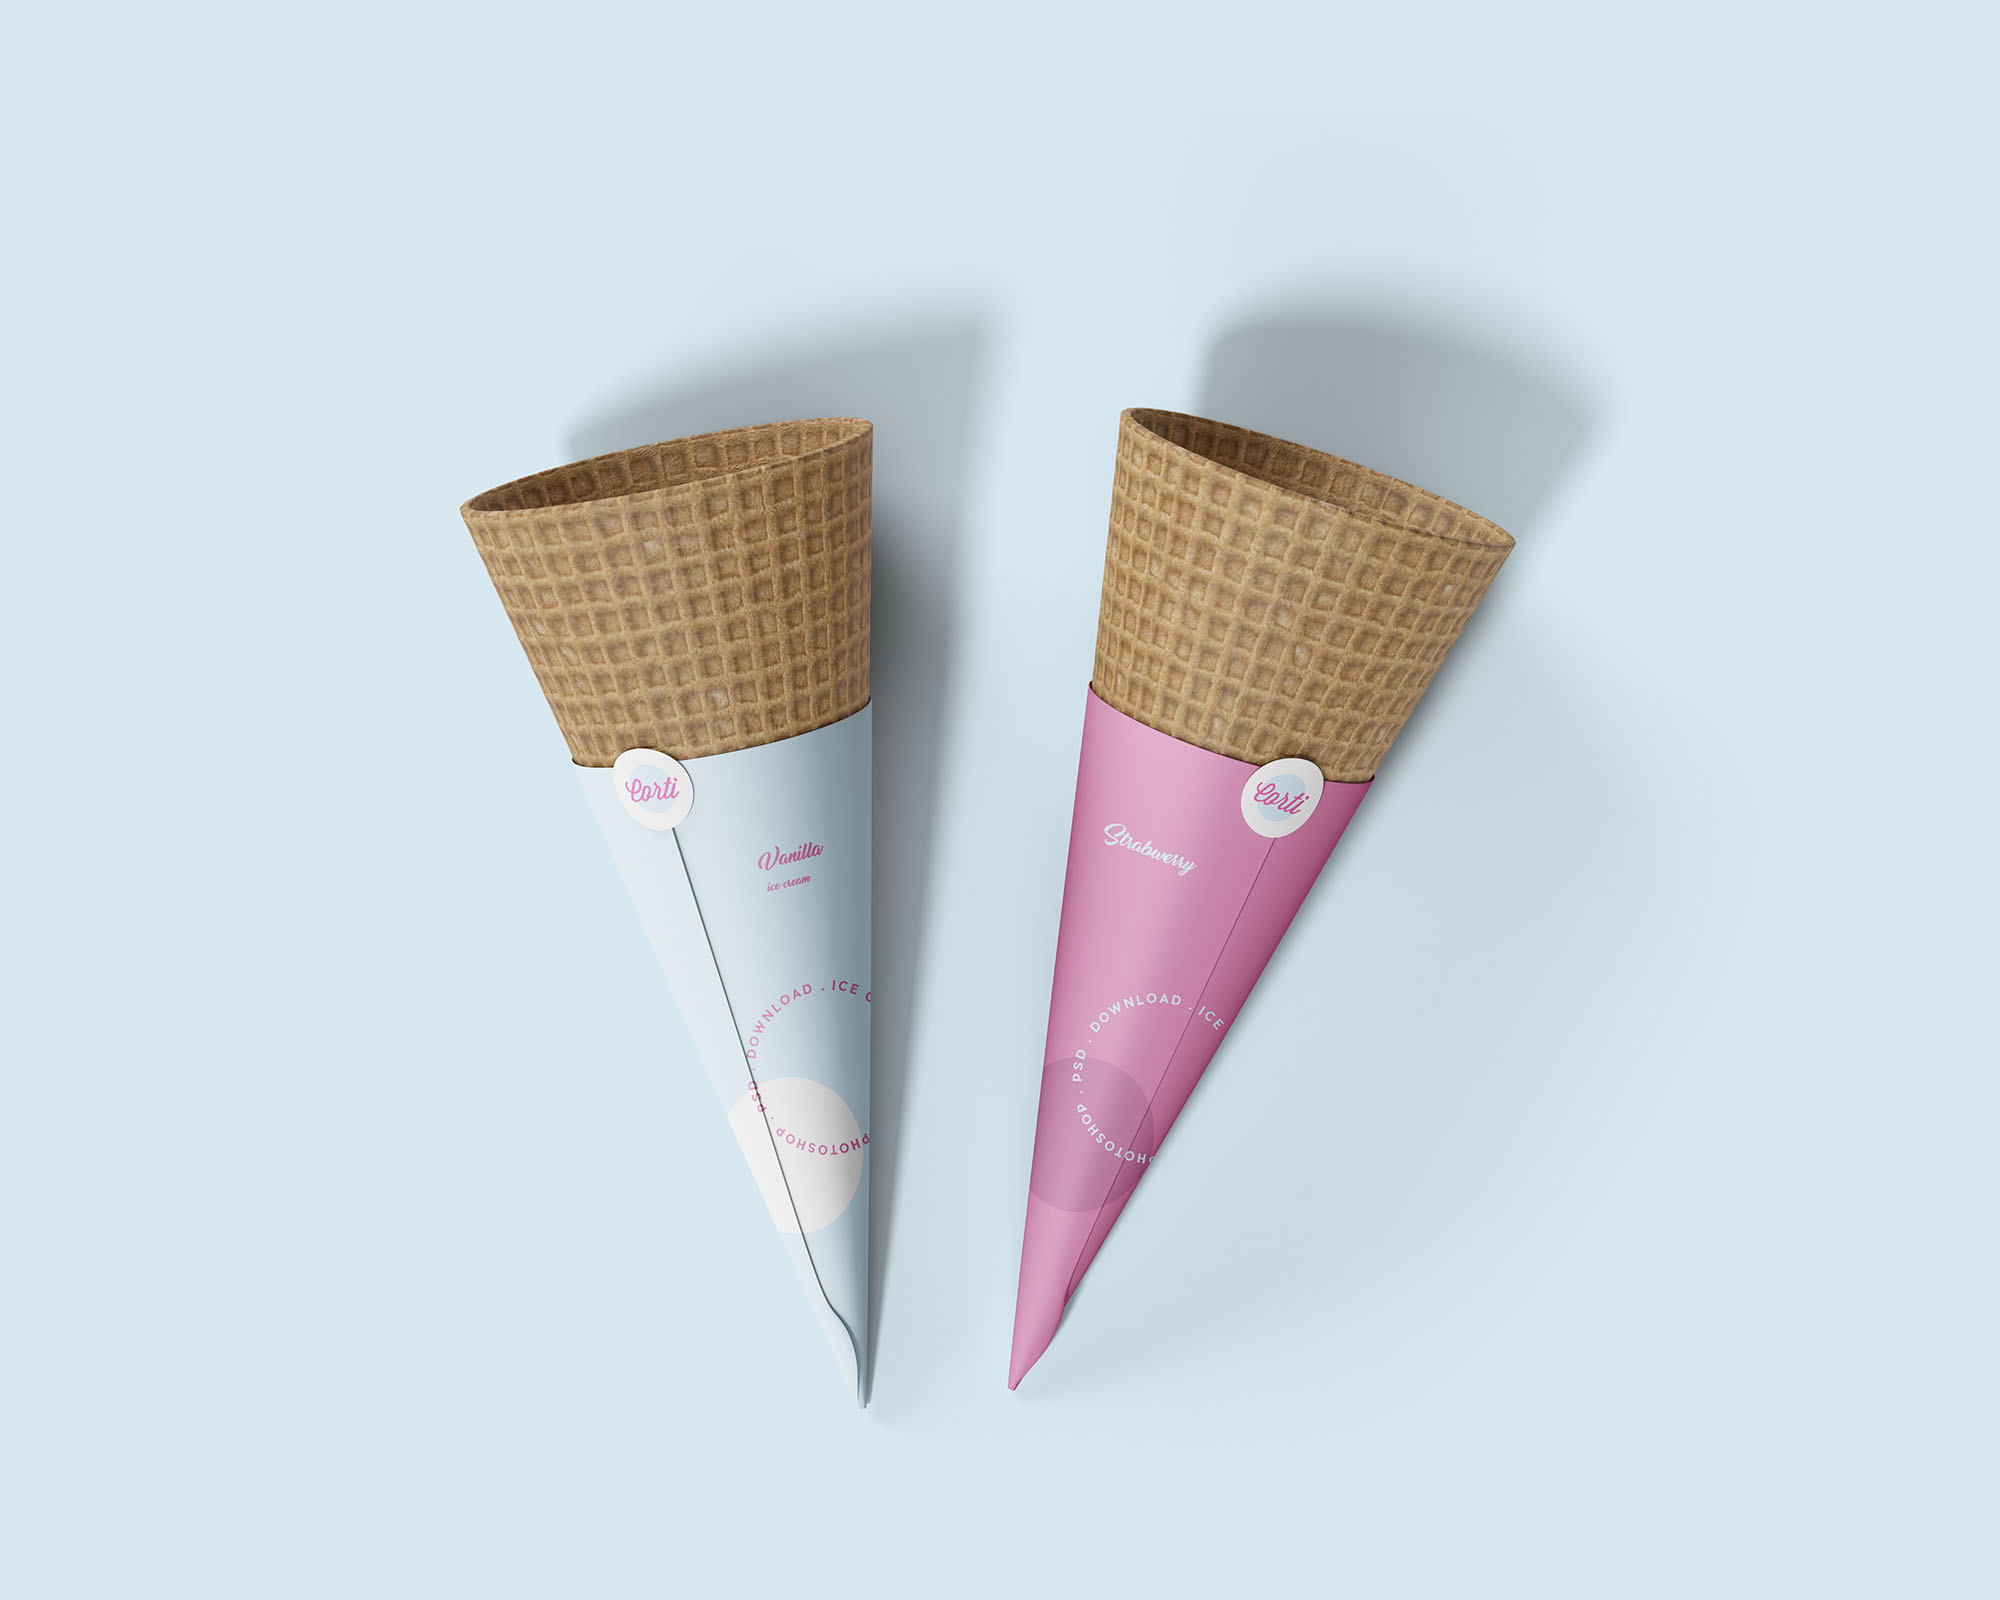 蛋卷冰淇淋包装纸设计样机模板 Ice Cream Cone Mockup插图